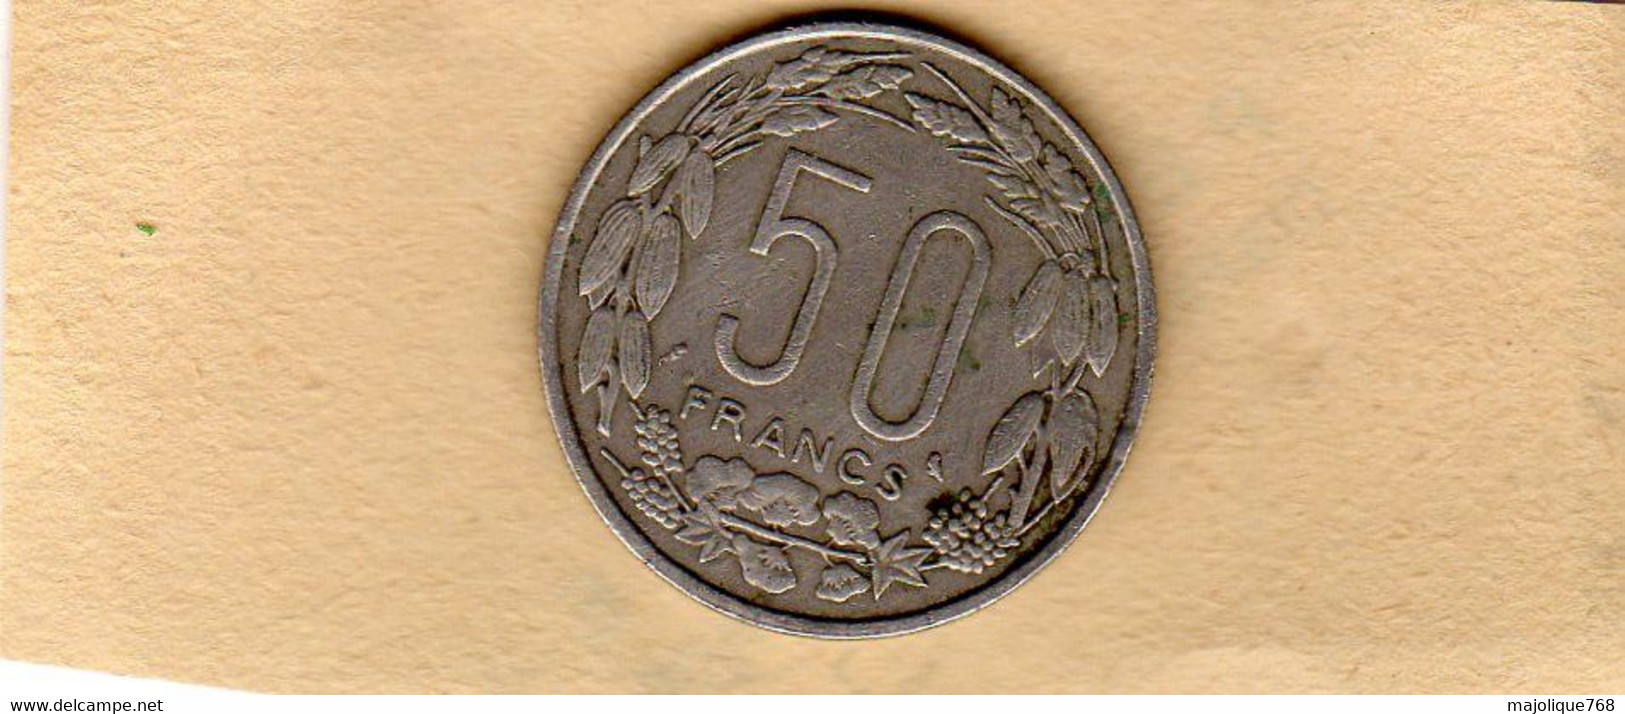 Piéce 50 Francs Republique Centrafricaine-Congo-Gabon-Tchad-1963 En TTB En Nickel - Zentralafrik. Republik